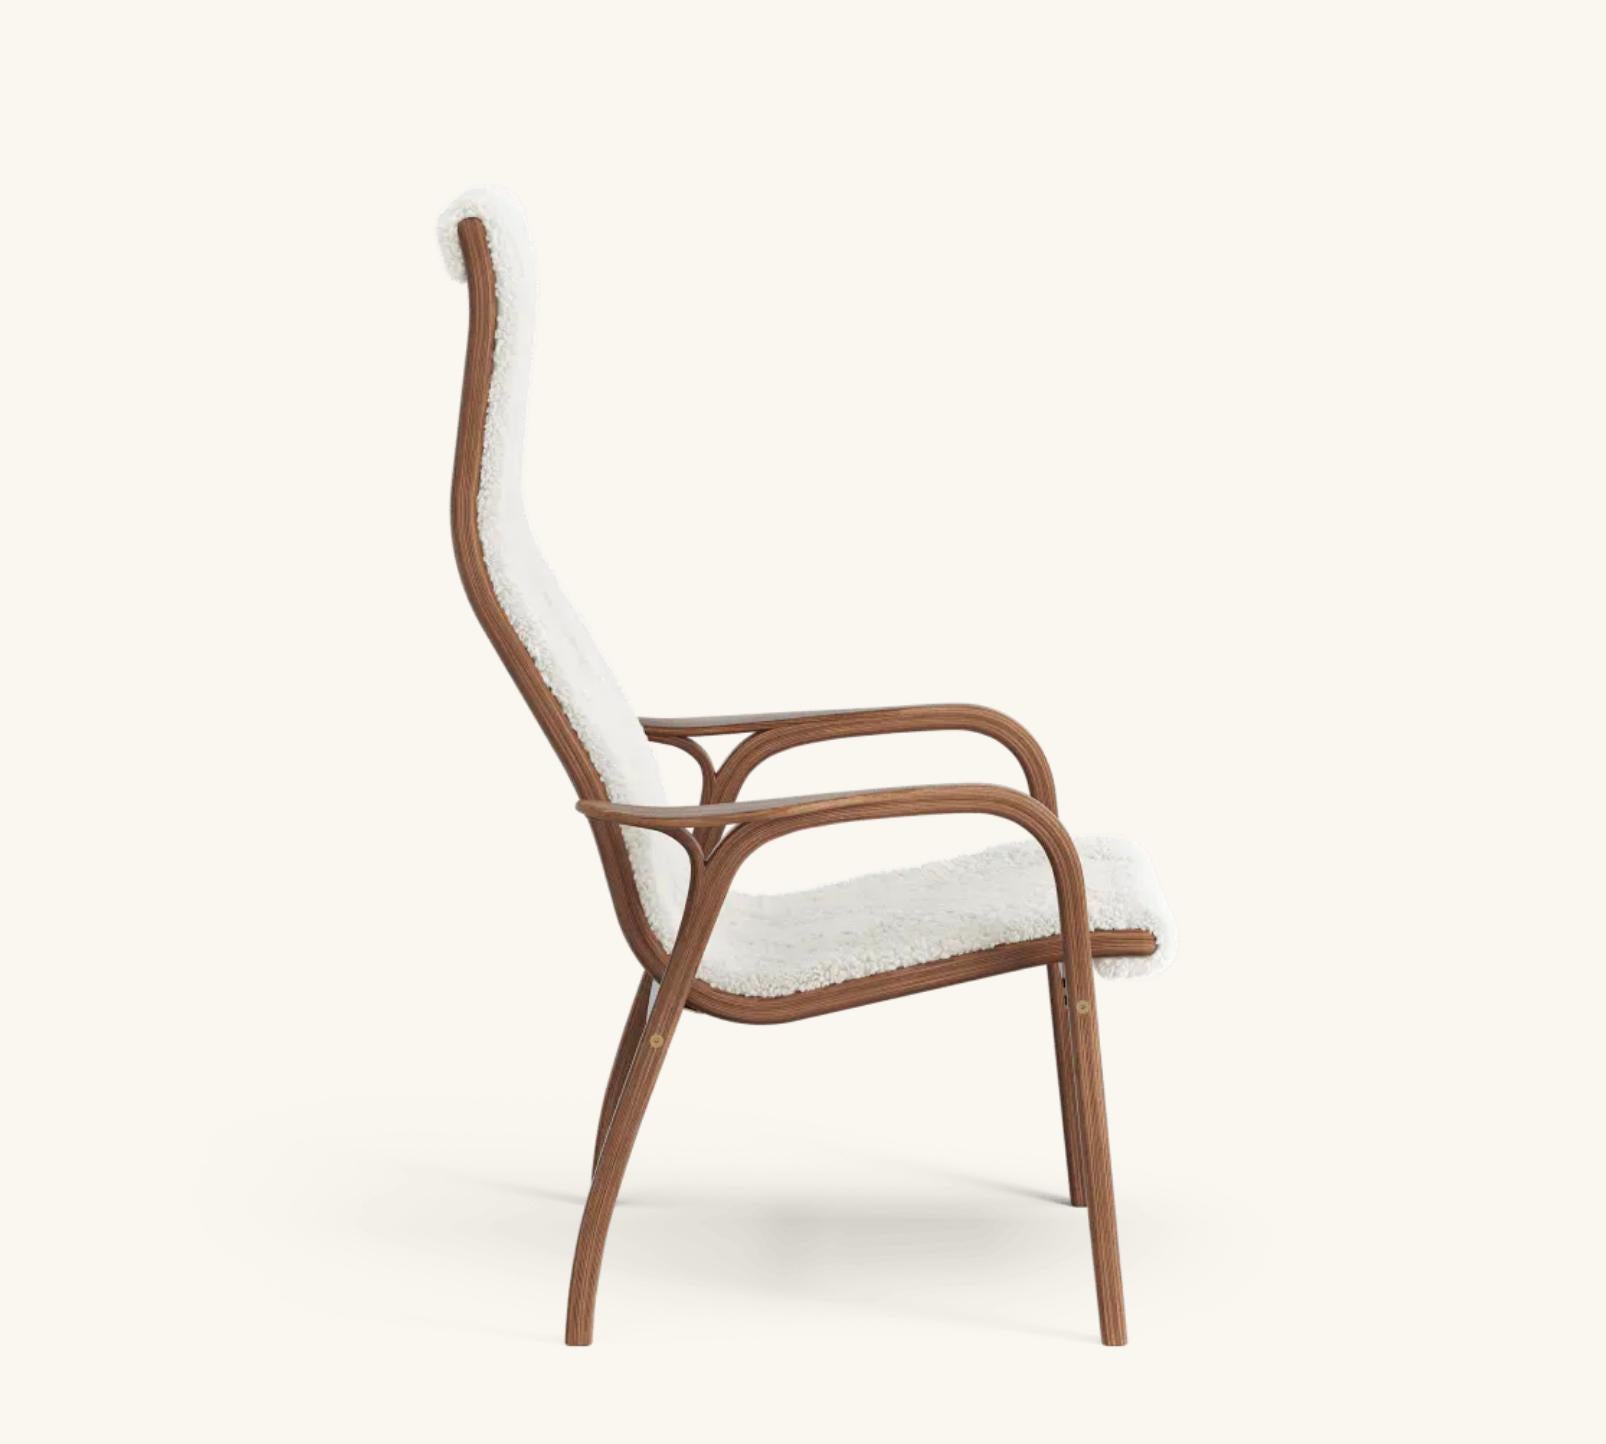 Yngve Ekström Lamino Easy Chair by Swedese en noyer et peau de mouton 'Off White'. Nouveau, design/One de 1956.

Le Lamino d'Yngve Ekström est l'un des fauteuils scandinaves les plus emblématiques. Conçue en 1956, cette chaise n'a jamais été